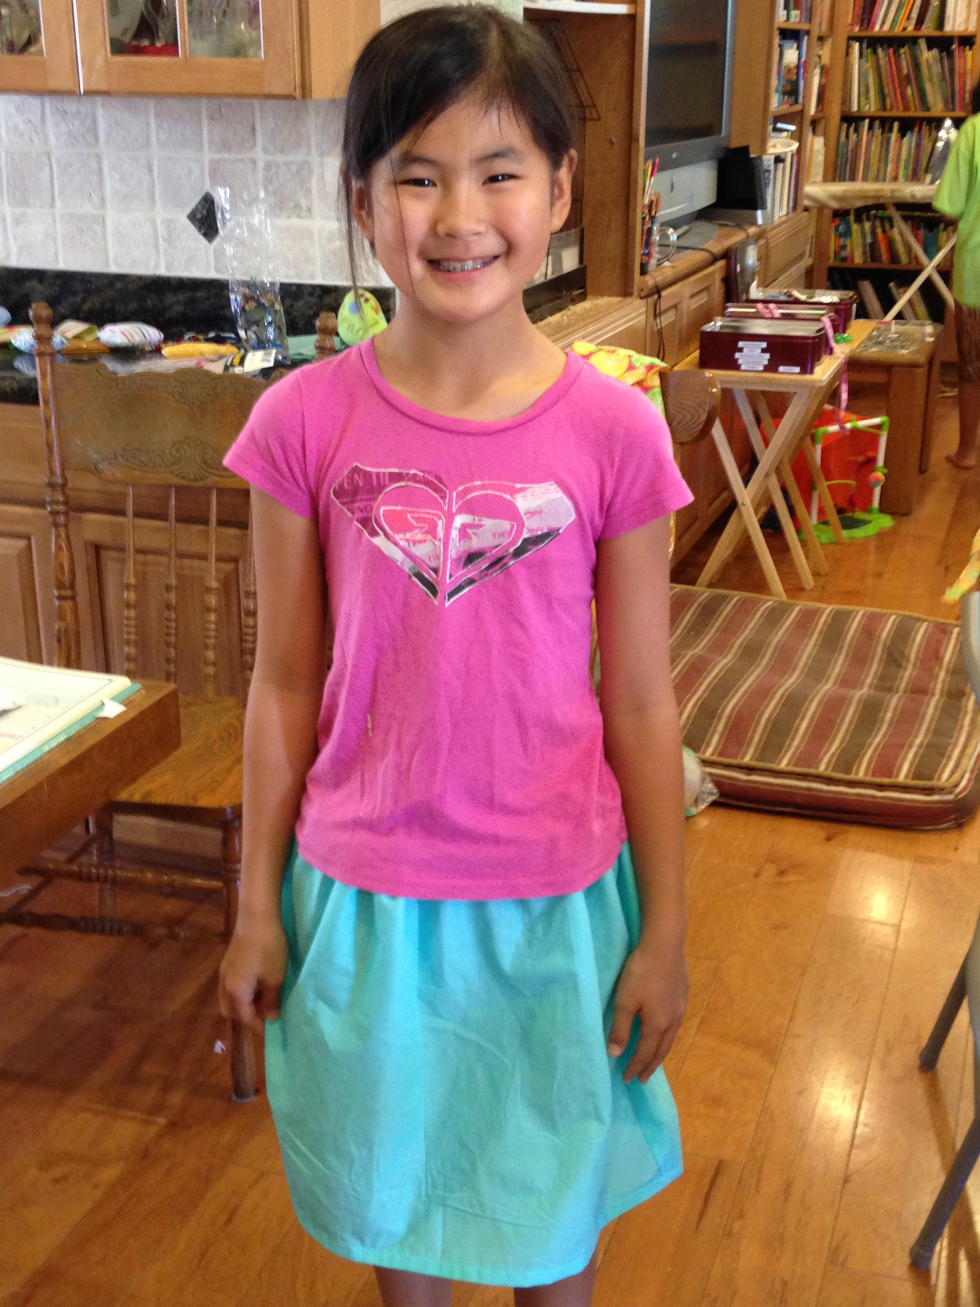  4th grade skirt. 